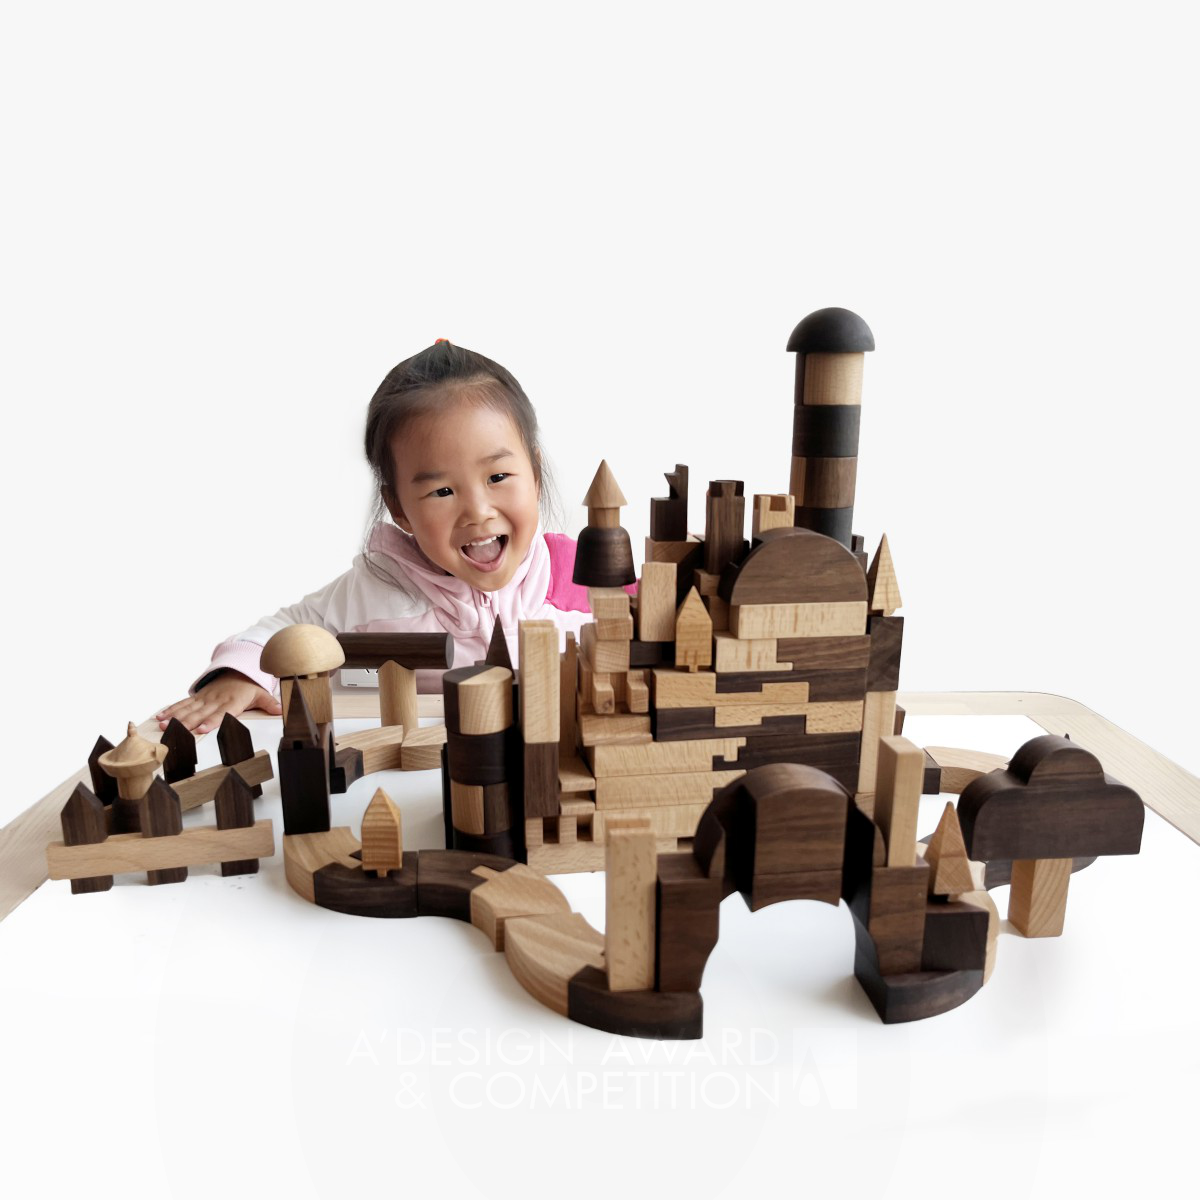 Concave-Convex : Des blocs de mortaise et tenon inspirés de la culture traditionnelle chinoise